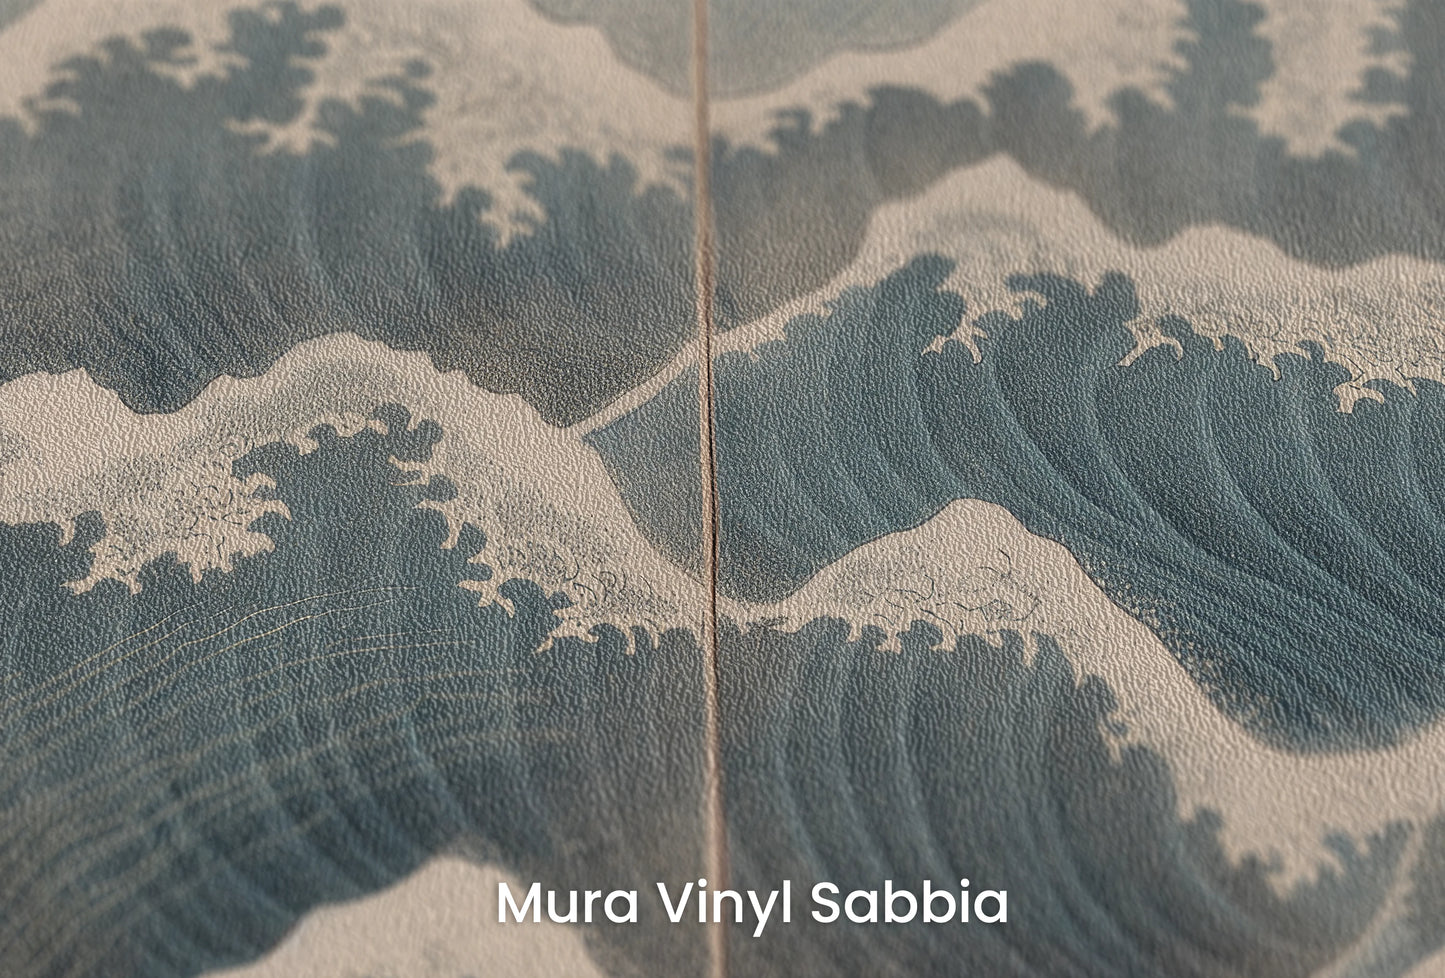 Zbliżenie na artystyczną fototapetę o nazwie Blue Crest na podłożu Mura Vinyl Sabbia struktura grubego ziarna piasku.